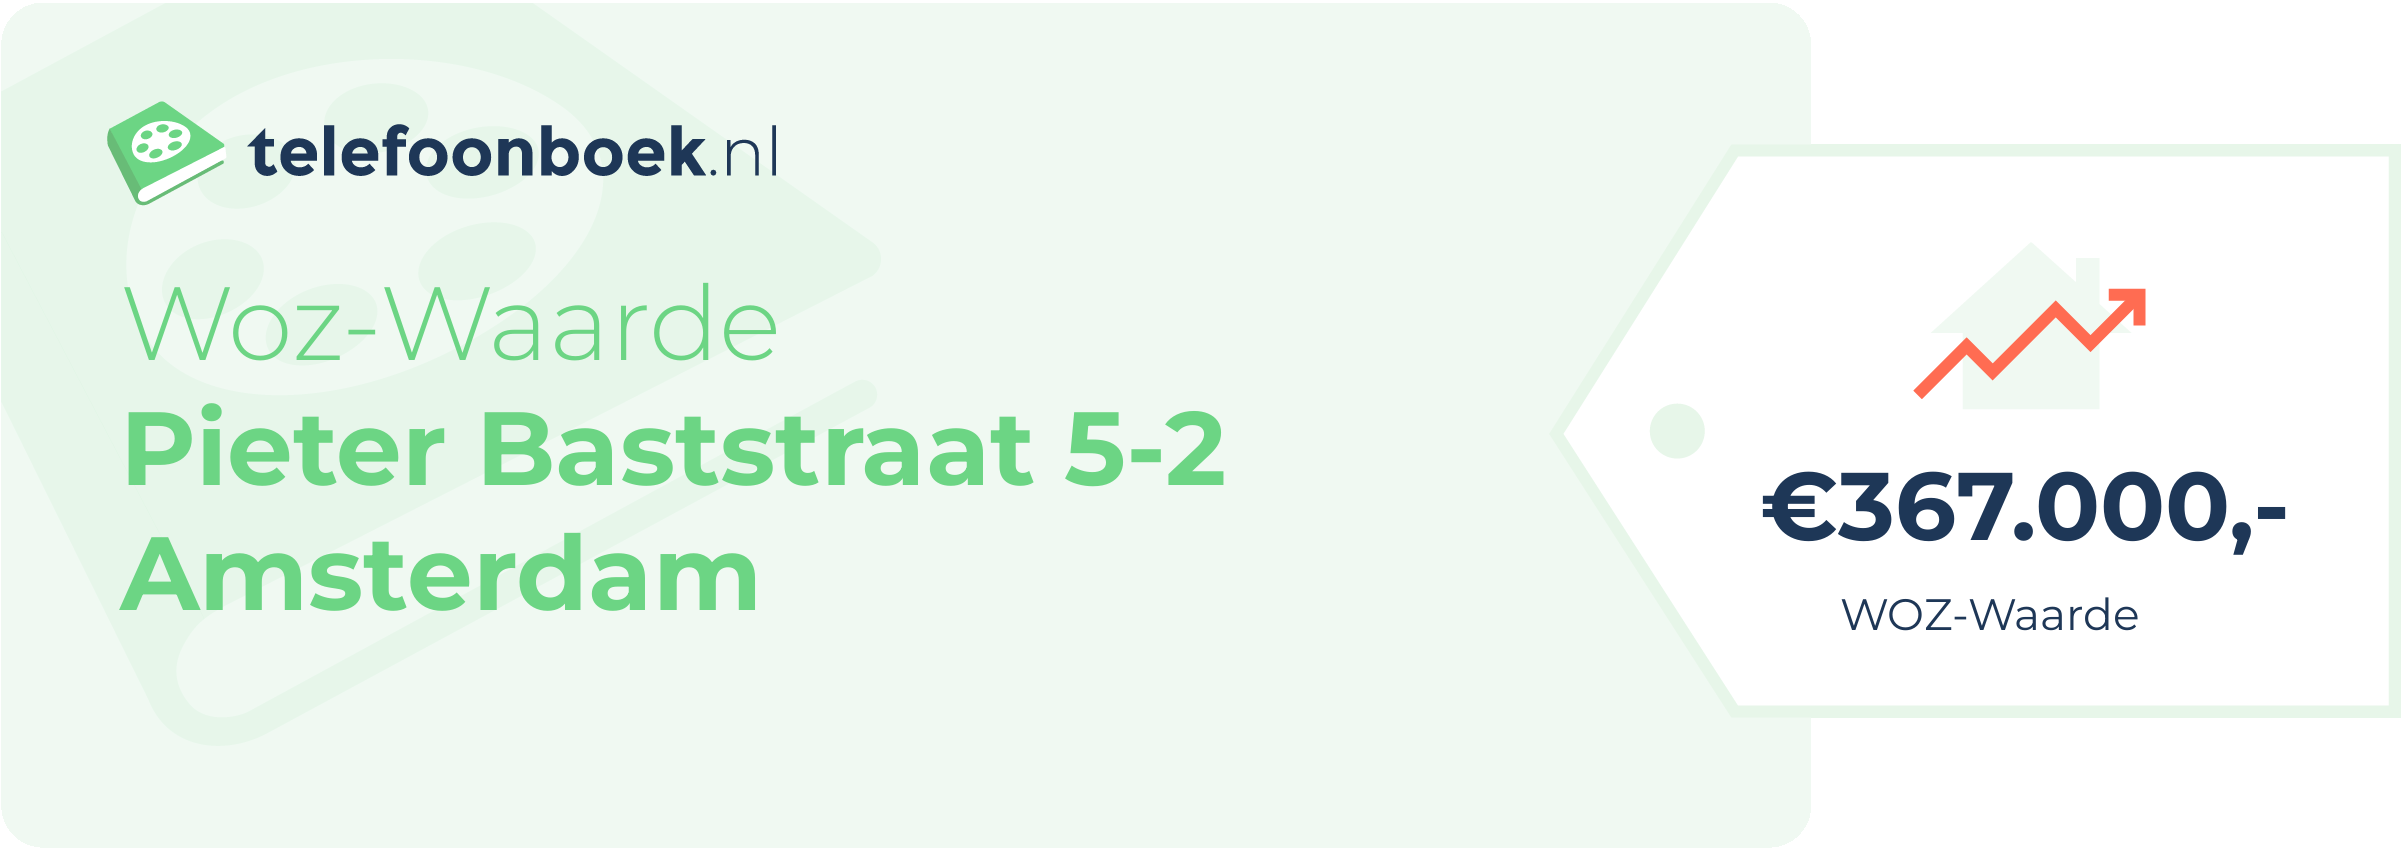 WOZ-waarde Pieter Baststraat 5-2 Amsterdam